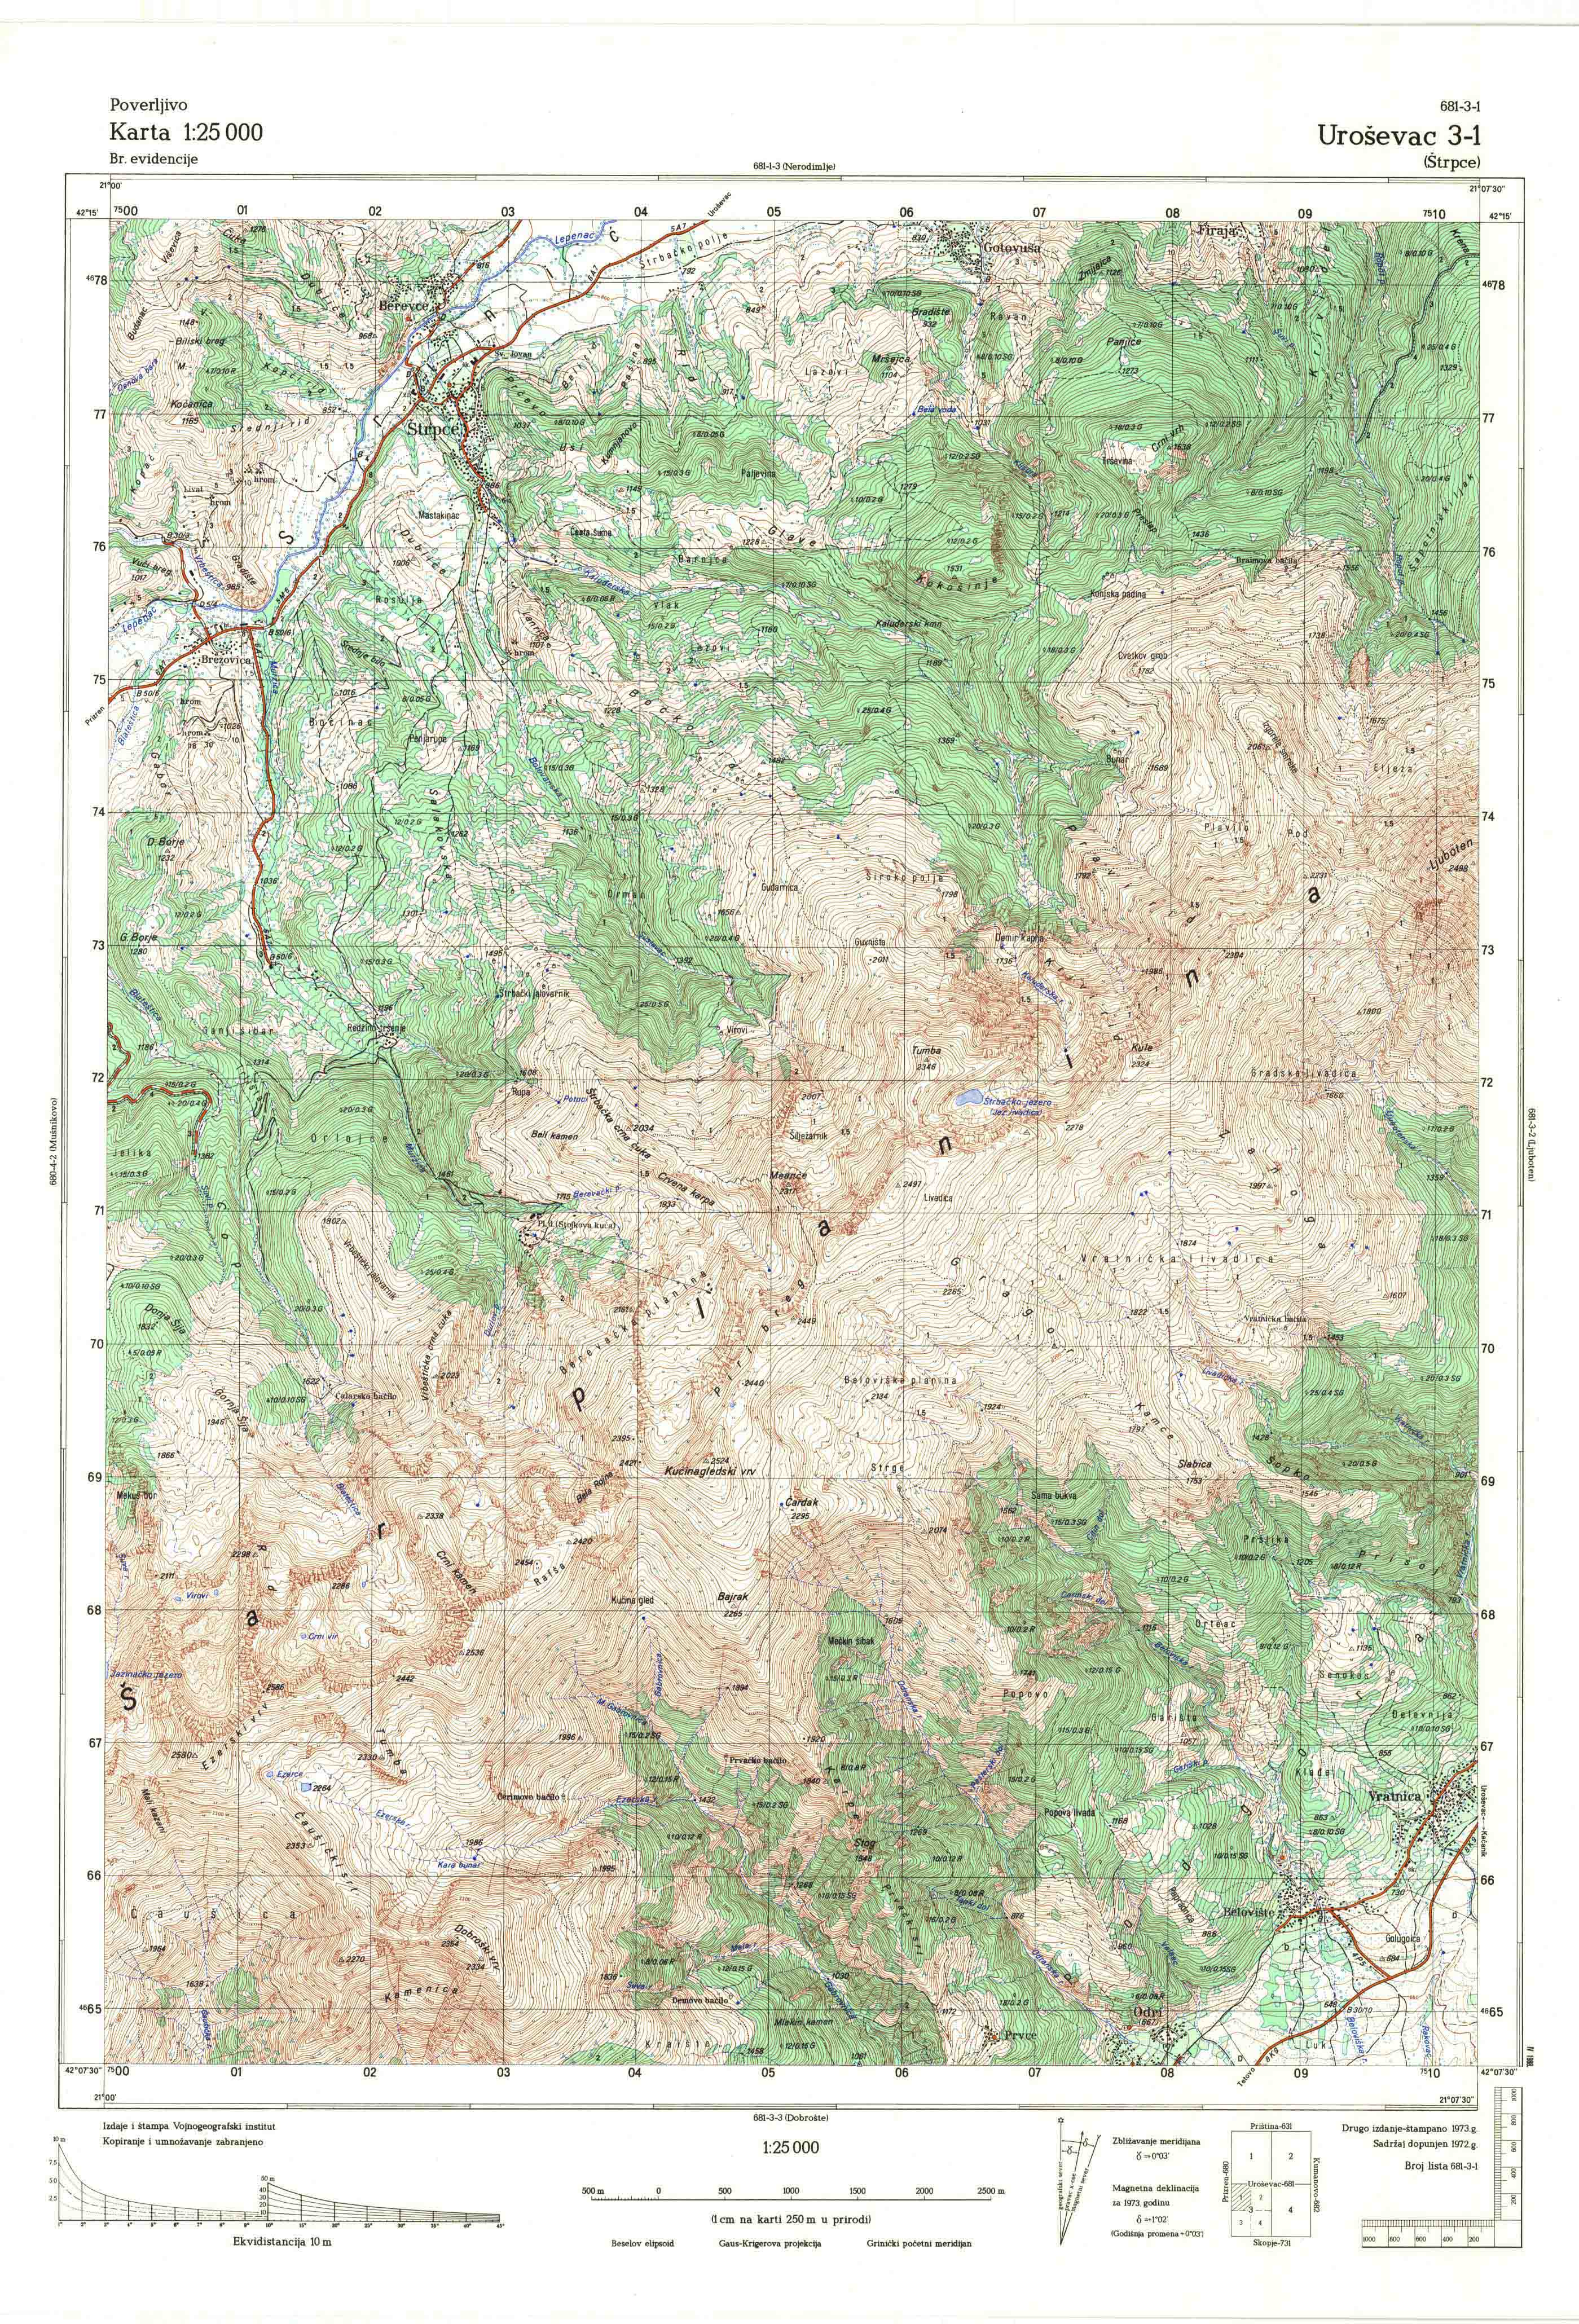  topografska karta Kosovo 25000 JNA  Uroševac